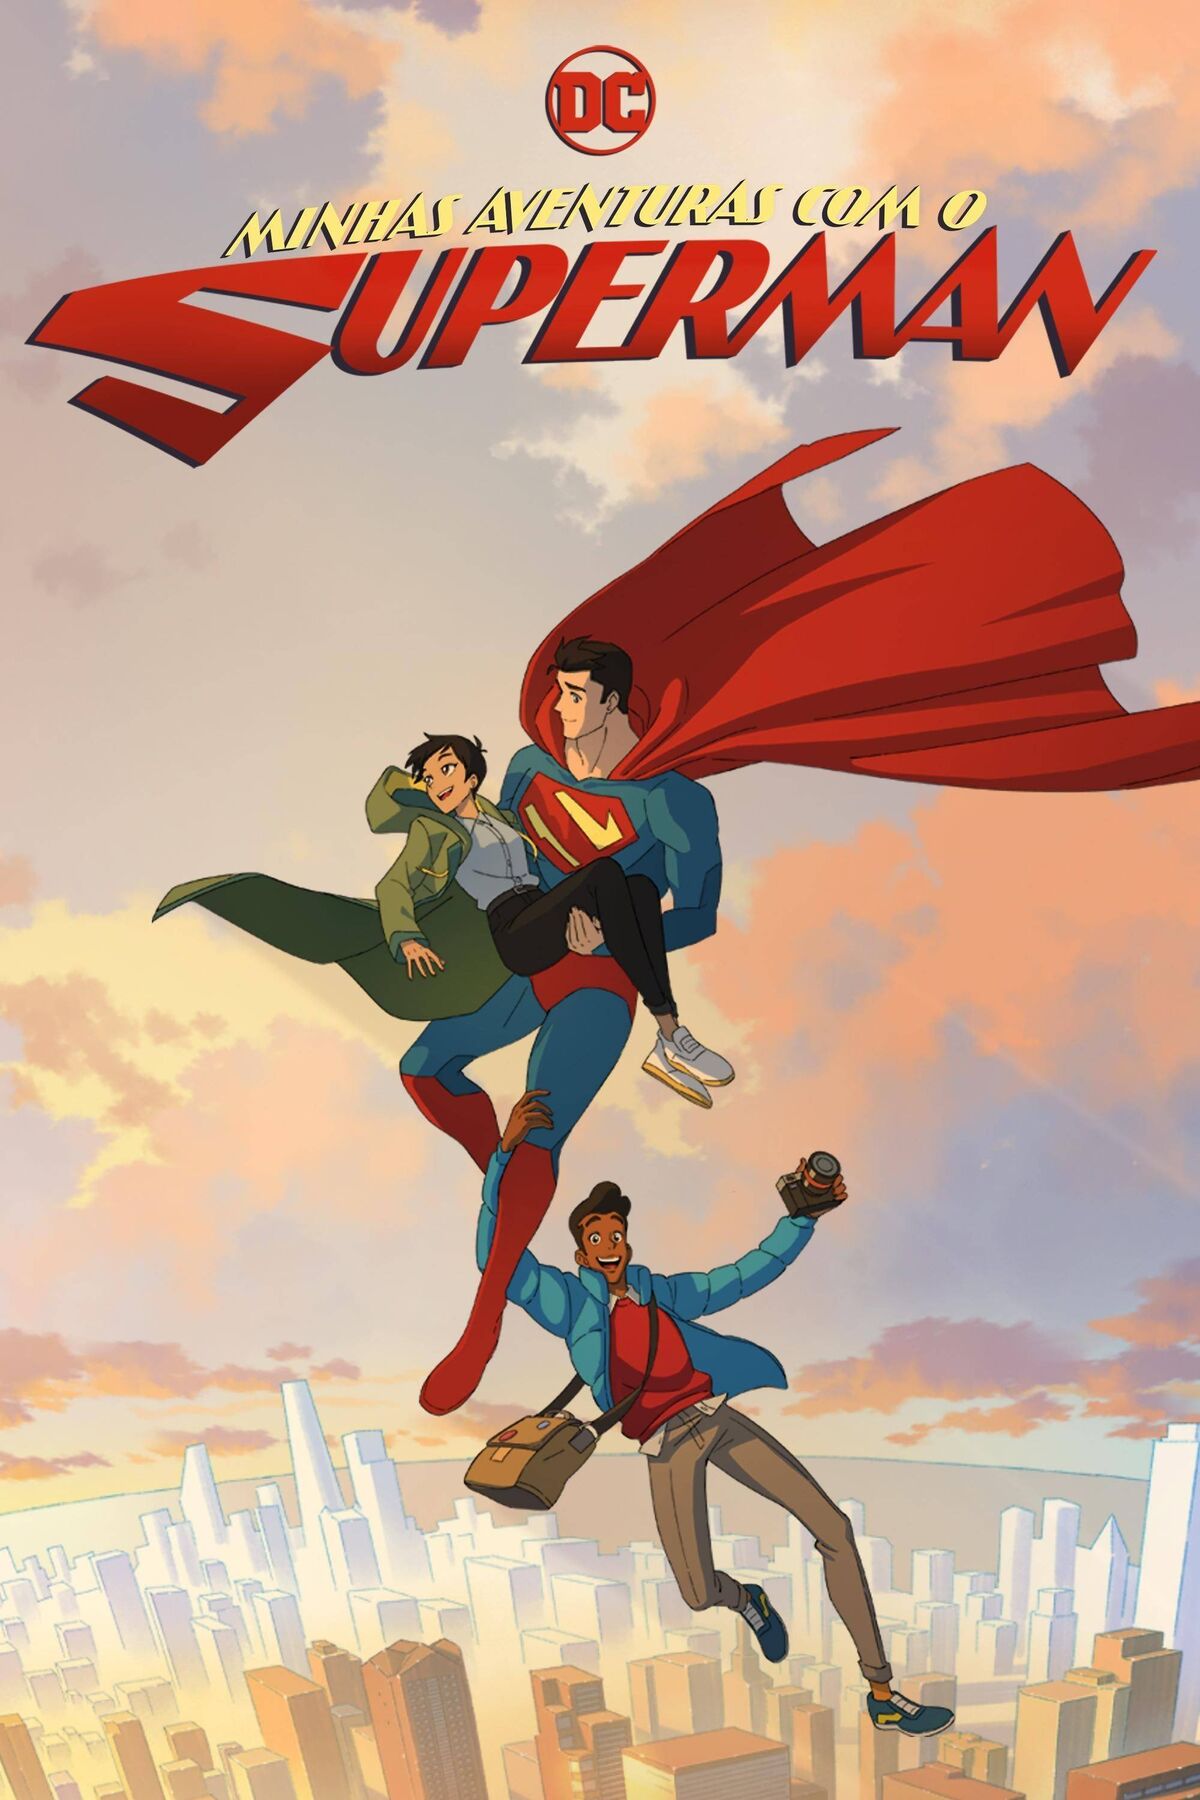 Aventuras do Superman, As n° 1/Abril